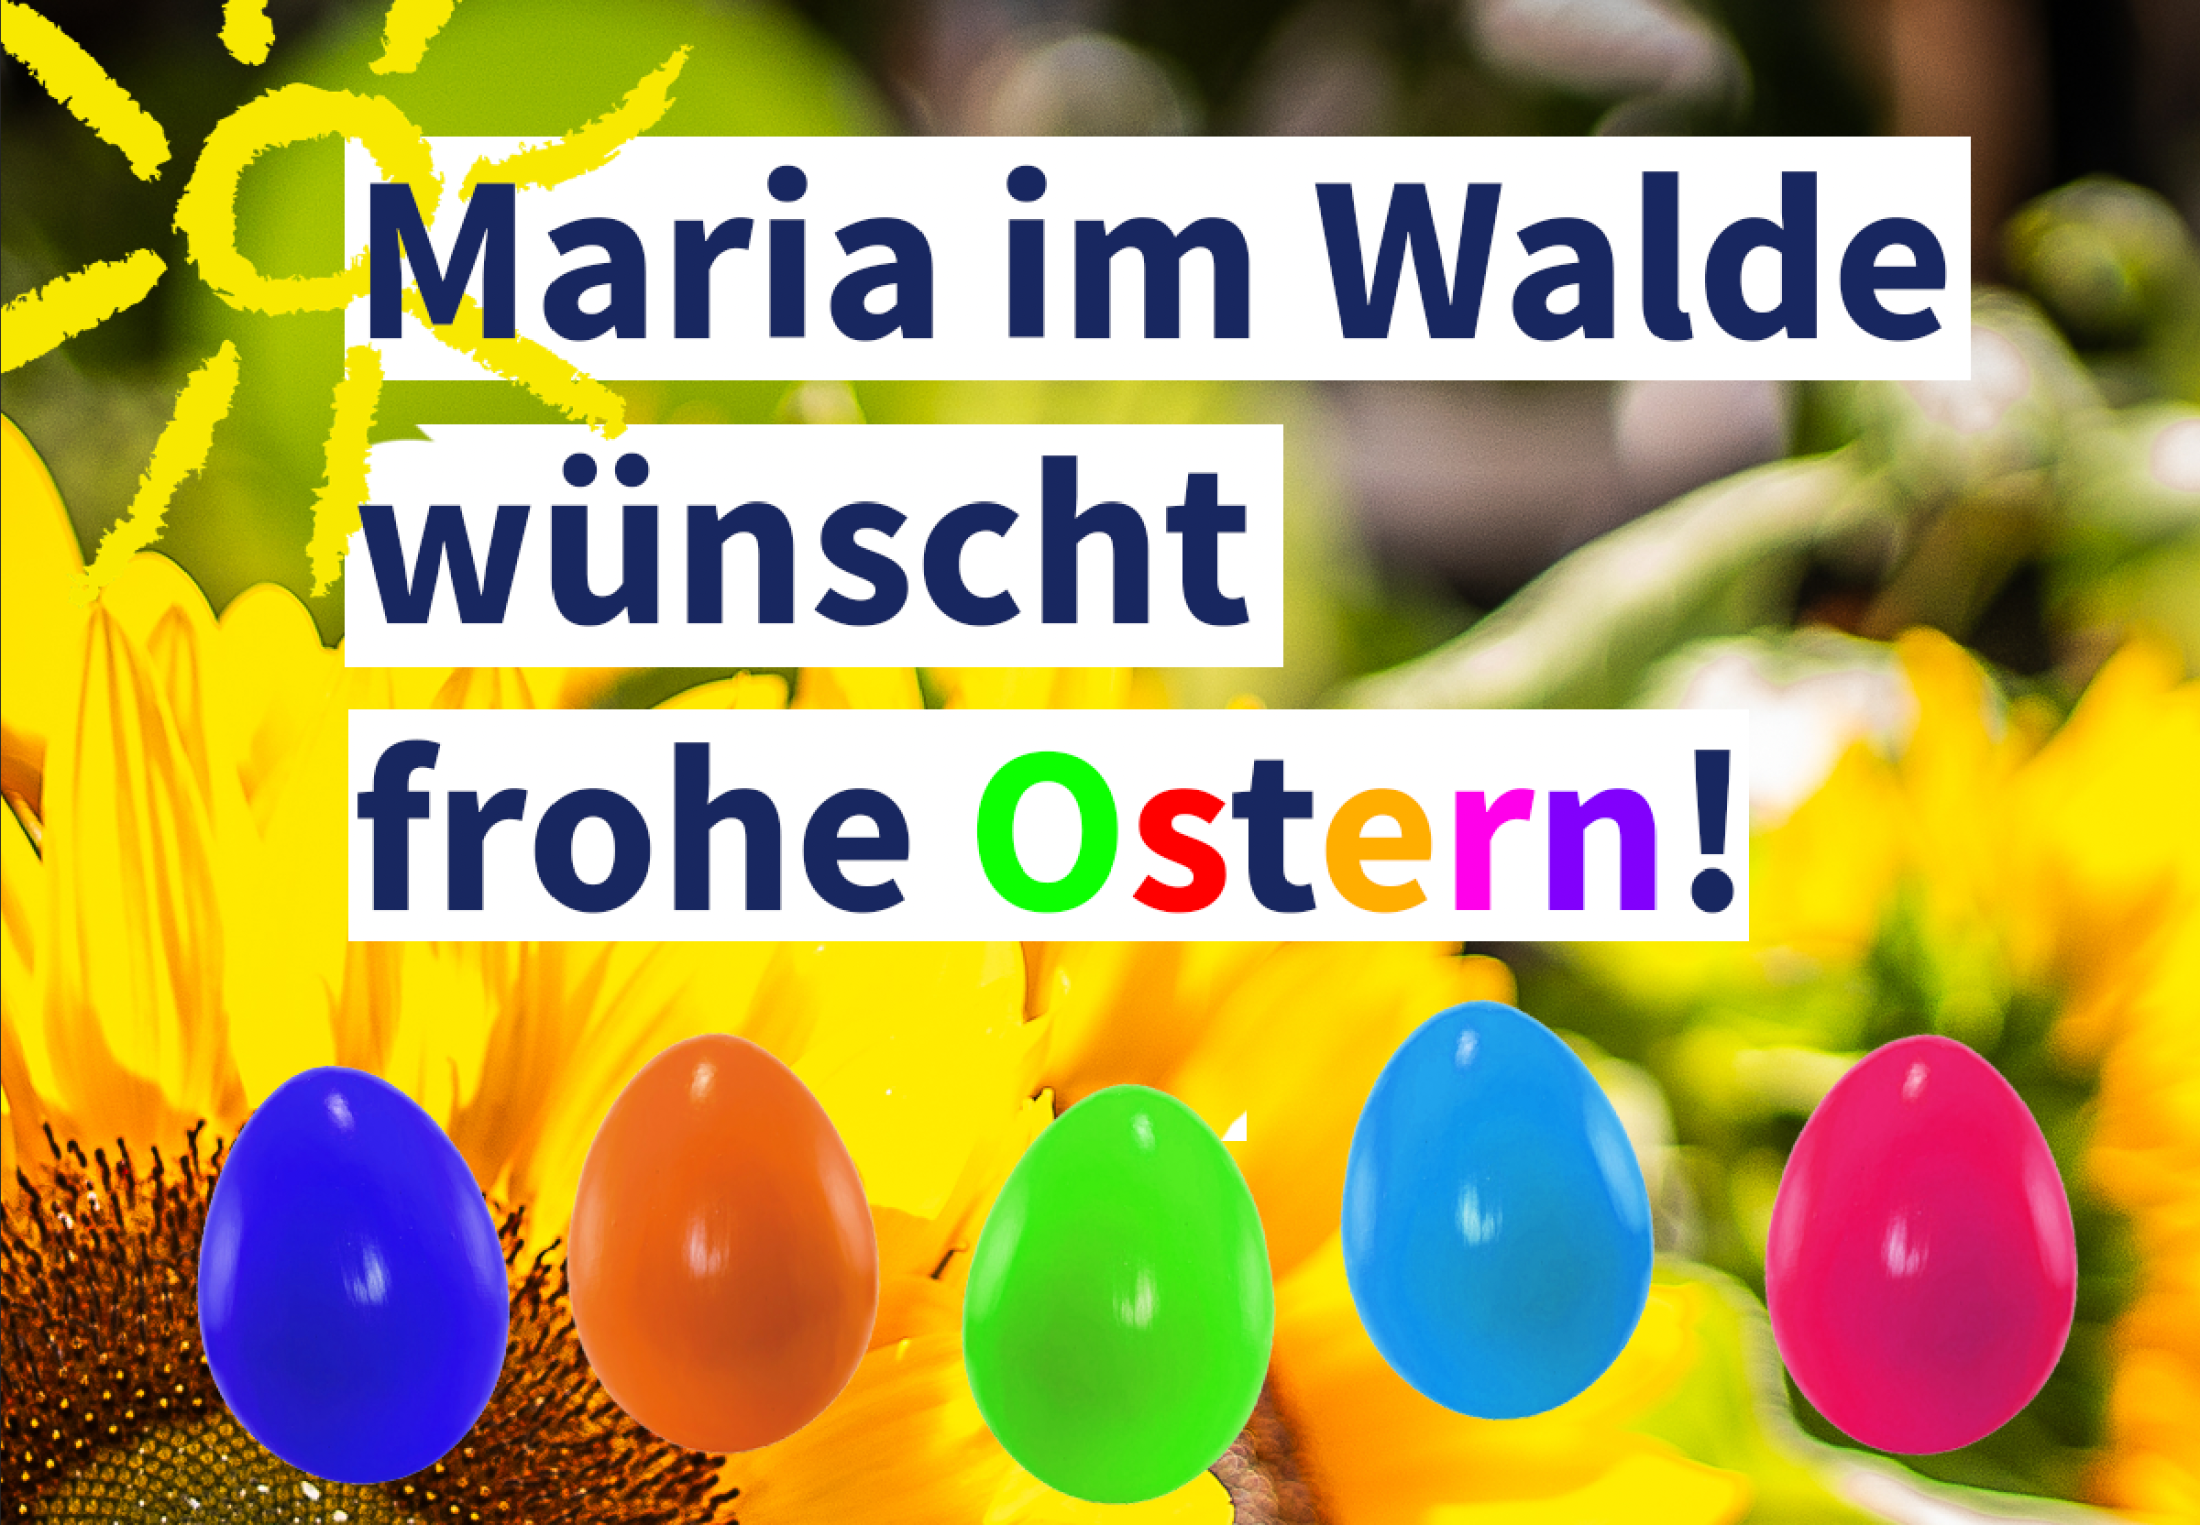 Maria im Walde wünscht frohe Ostern!